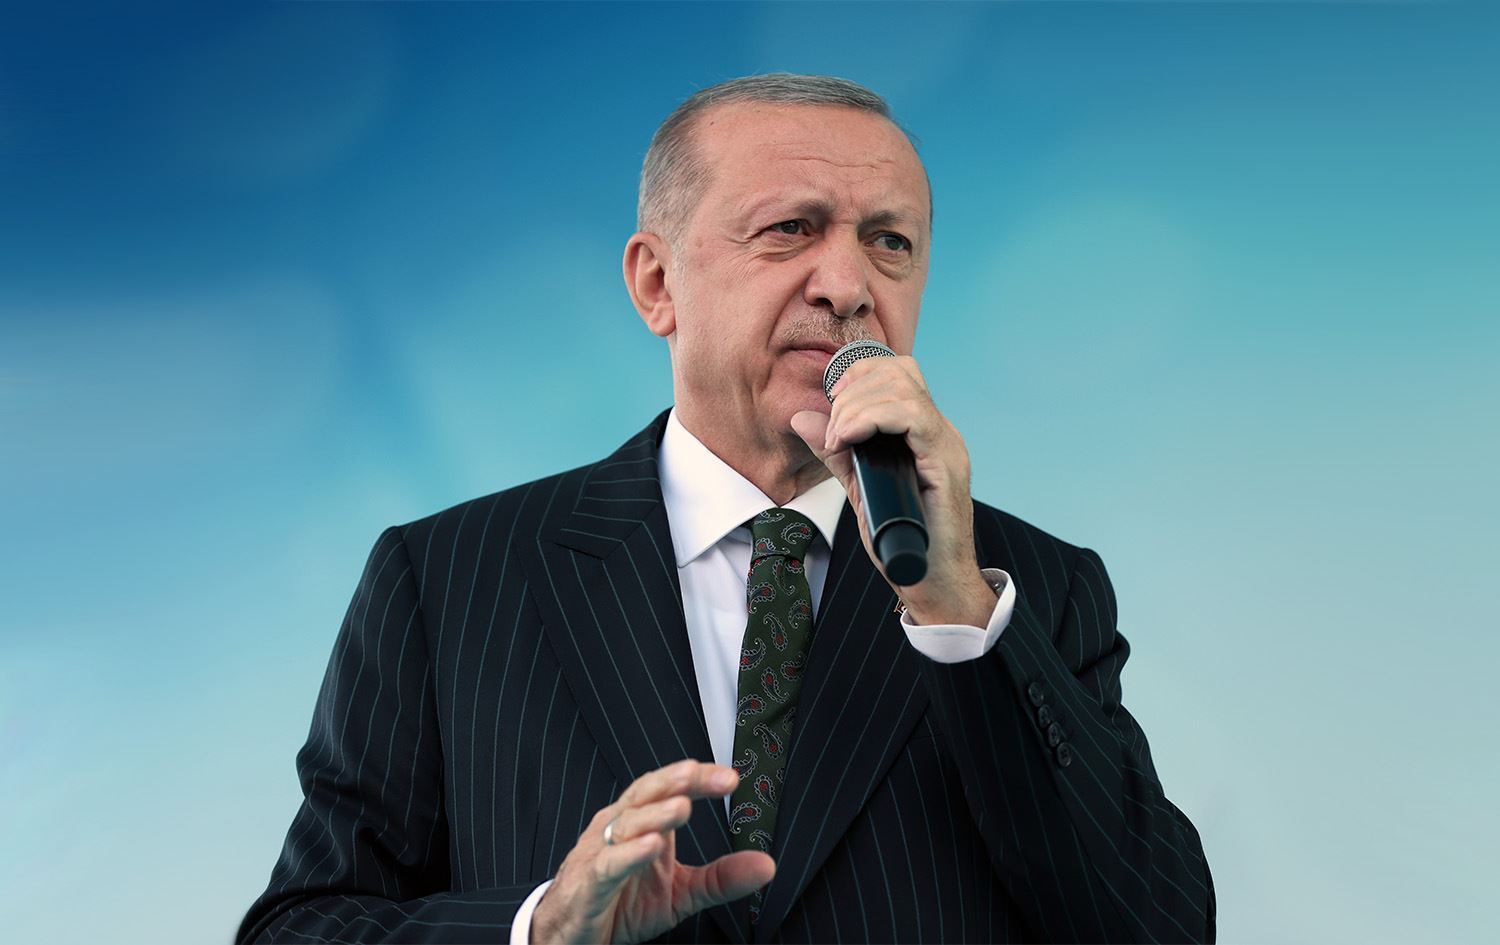 Cumhurbaşkanı Erdoğan Açıkladı! Emekliye Ek Ödeme Müjdesi! Tarihler Belli Oldu